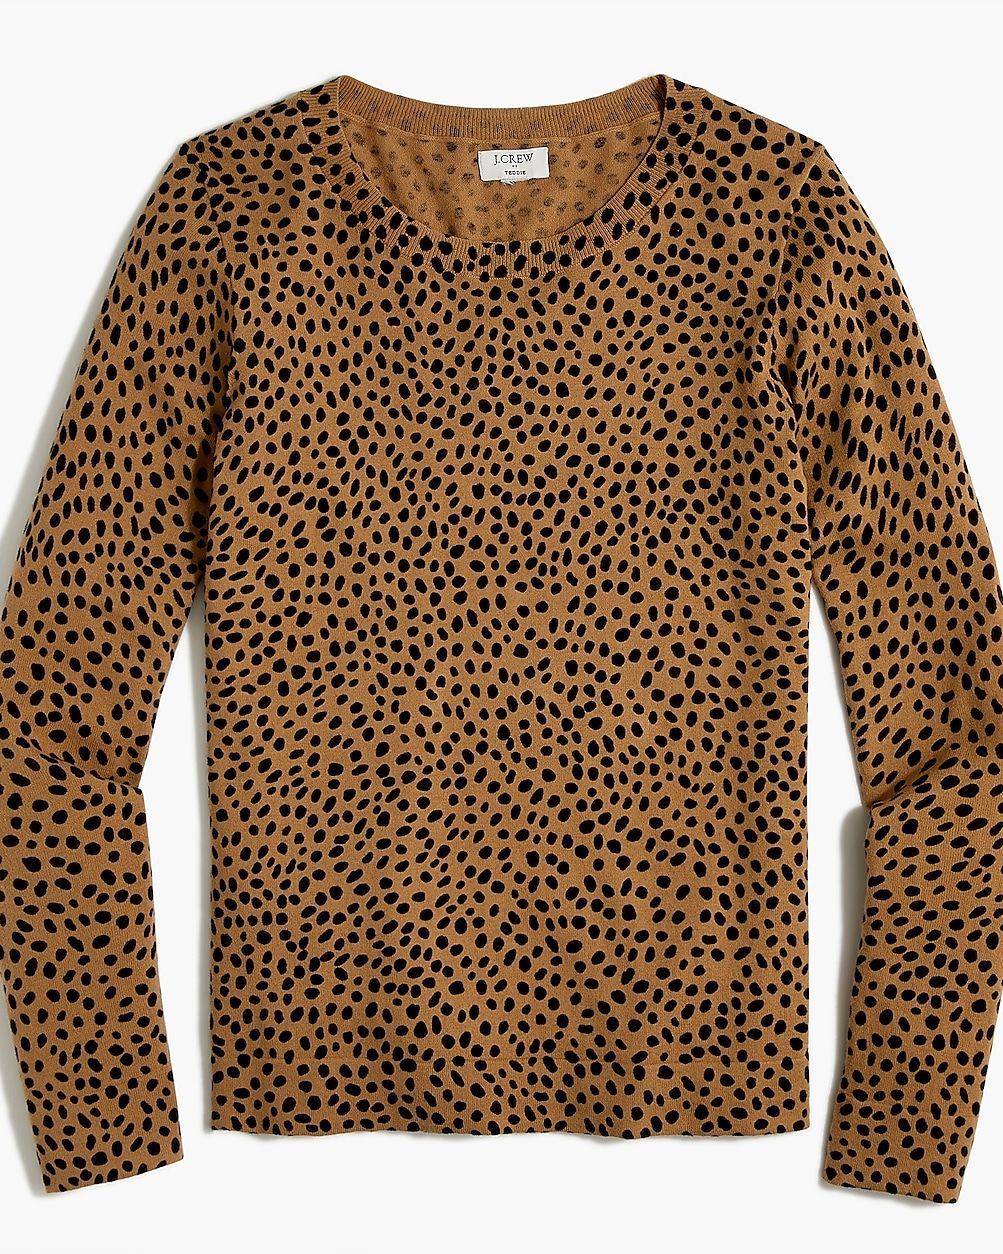 Cheetah Teddie sweater | J.Crew Factory